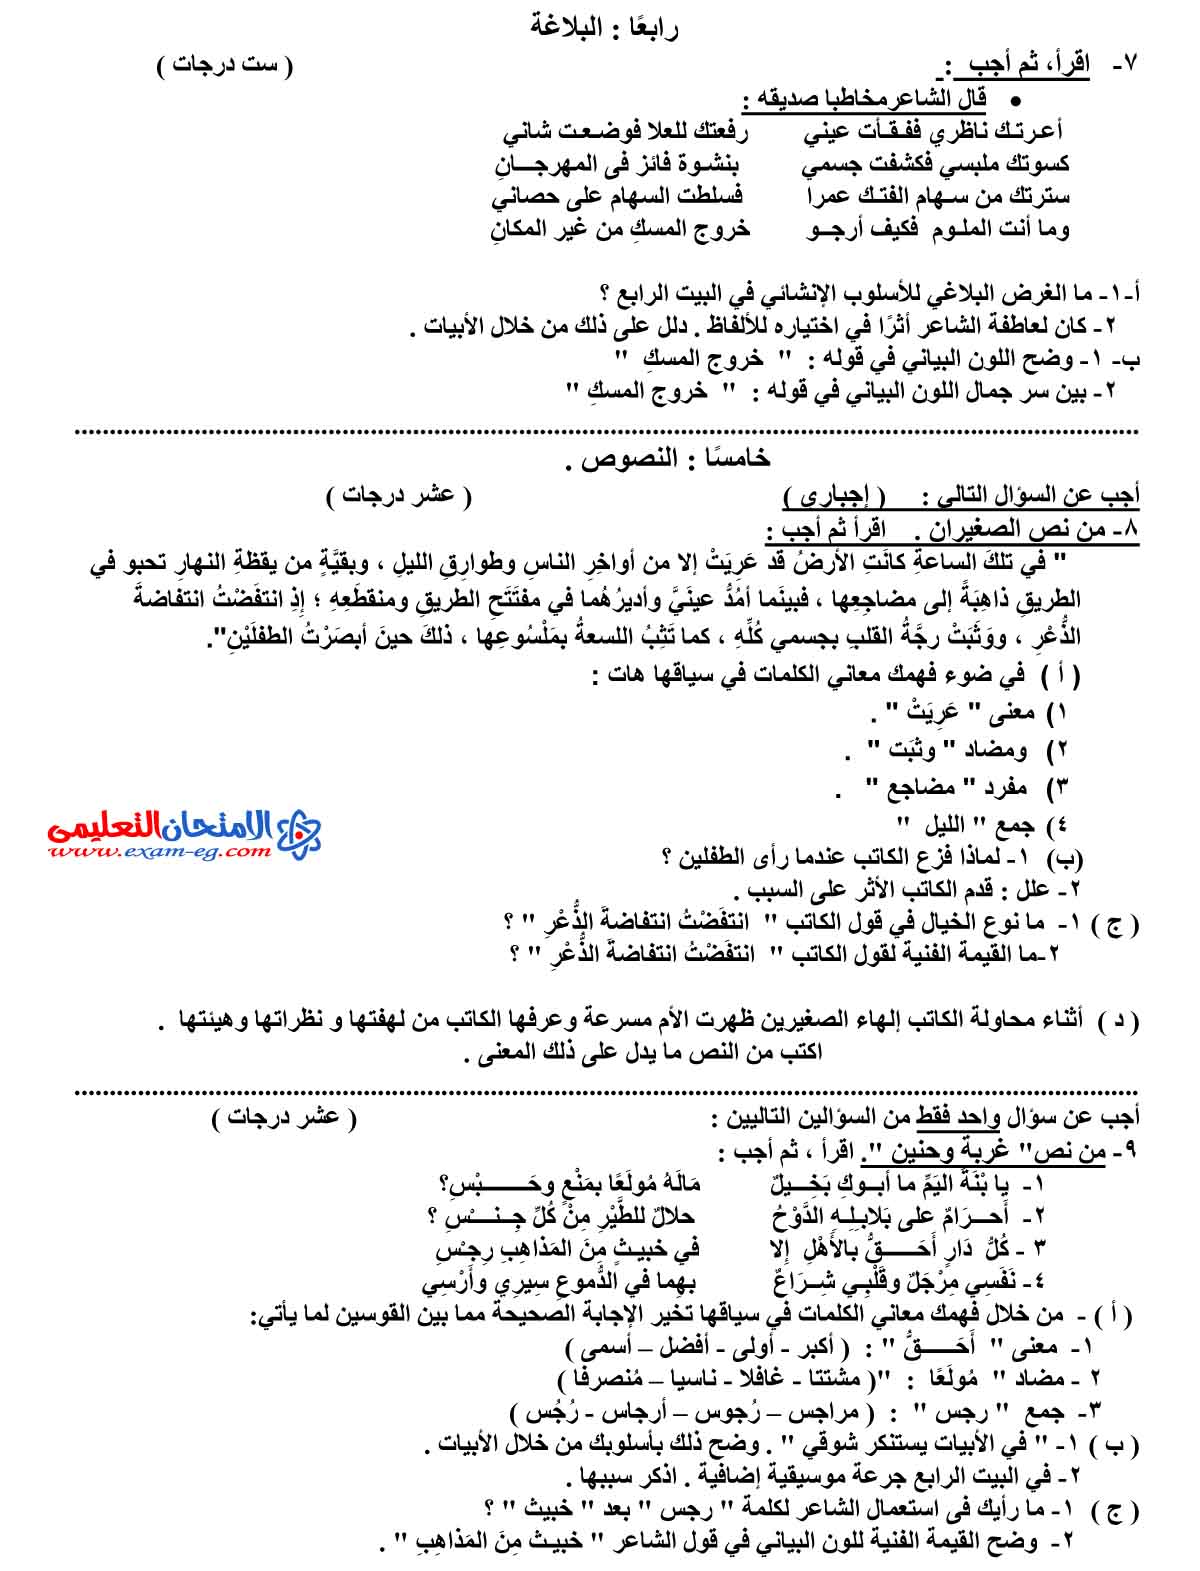 امتحان اللغة العربية 2 - مدرسة اون لاين (3)